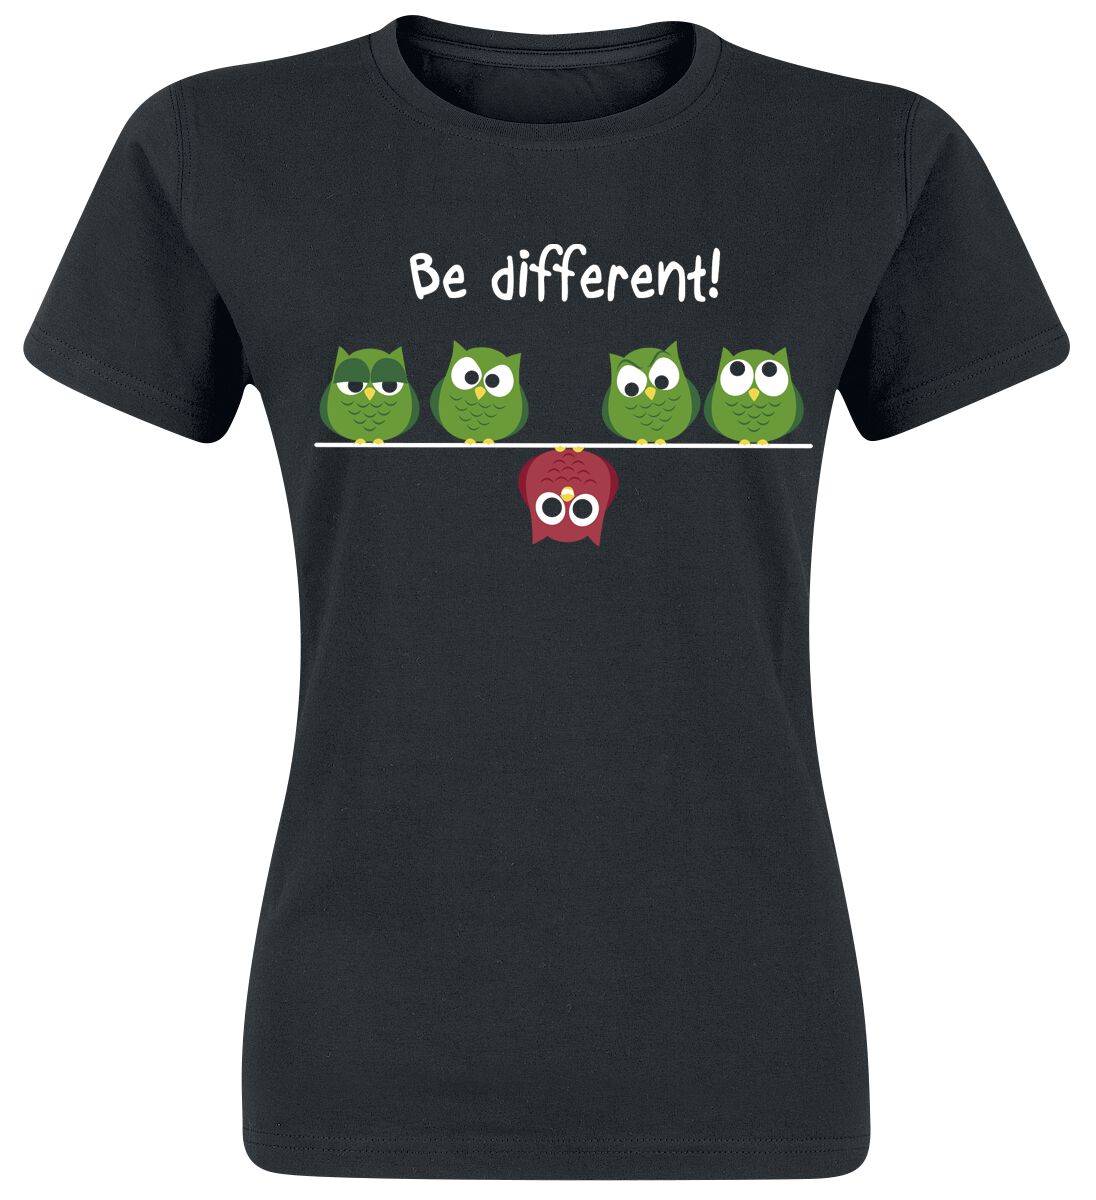 Be Different! T-Shirt - XS bis 3XL - für Damen - Größe 3XL - schwarz